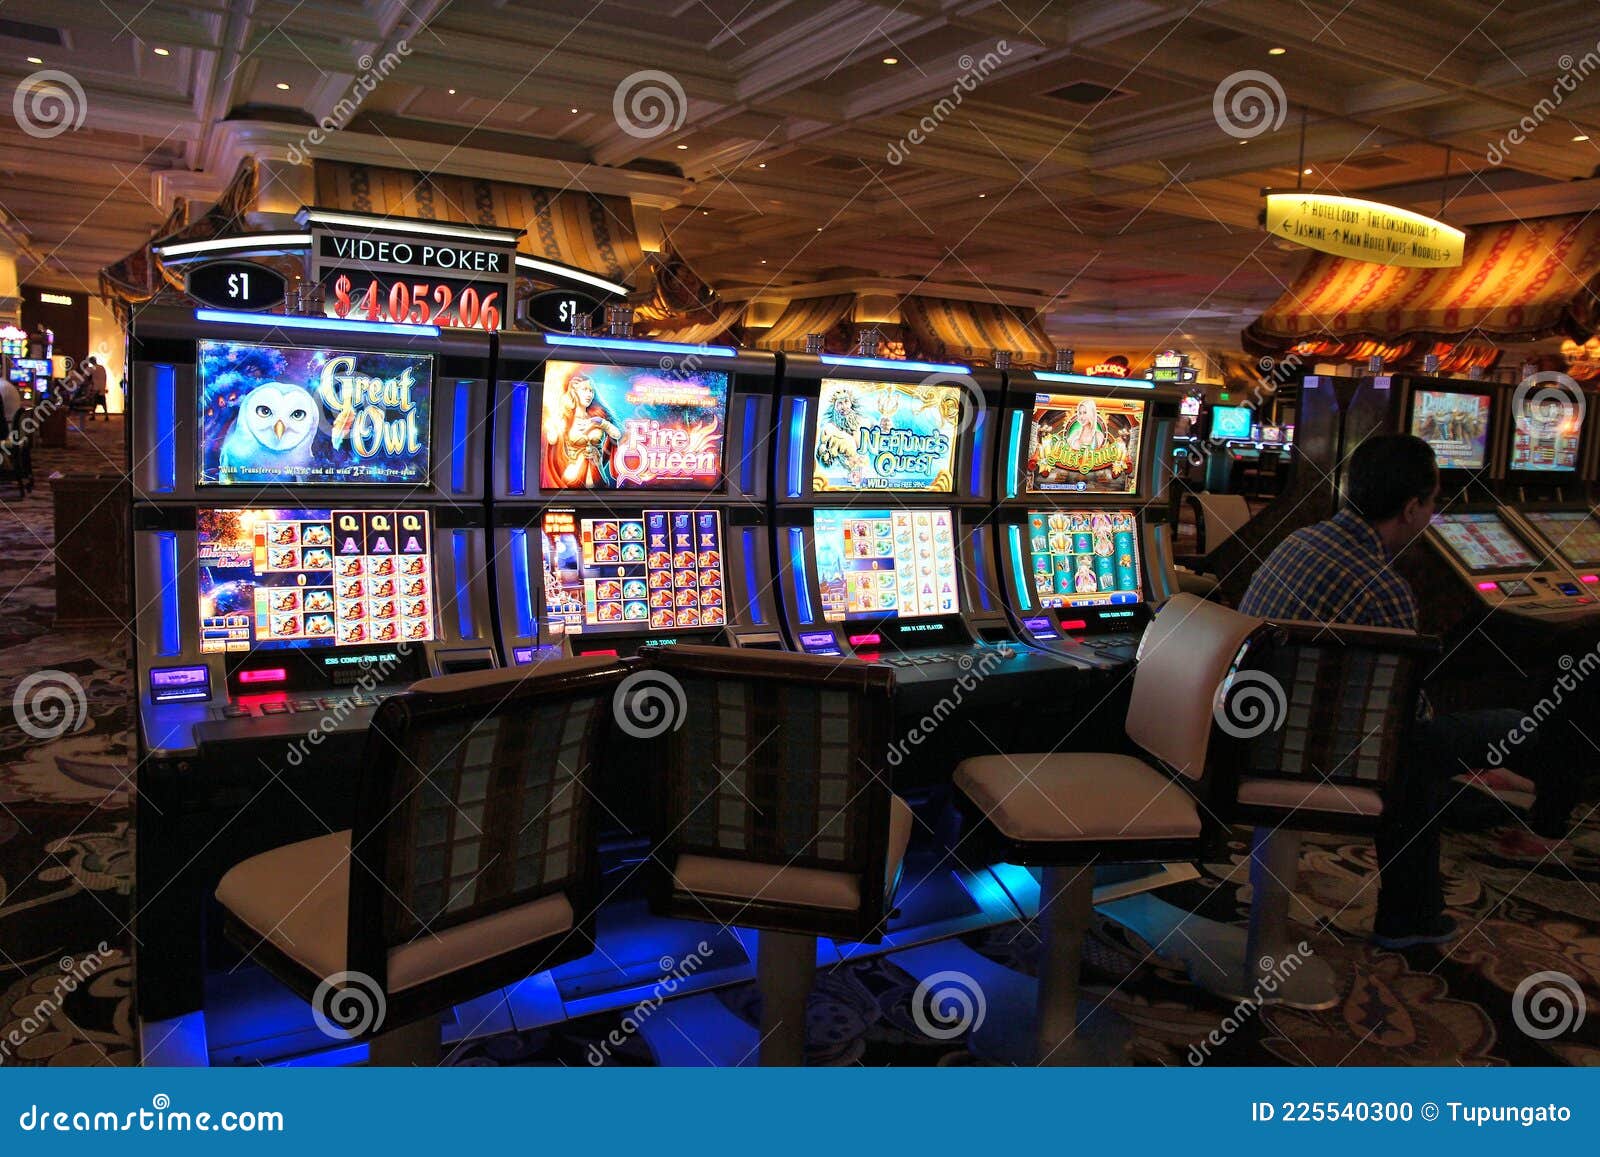 Игровые автоматы в казино лас вегаса в игры онлайн карты дурак на раздевание играть бесплатно